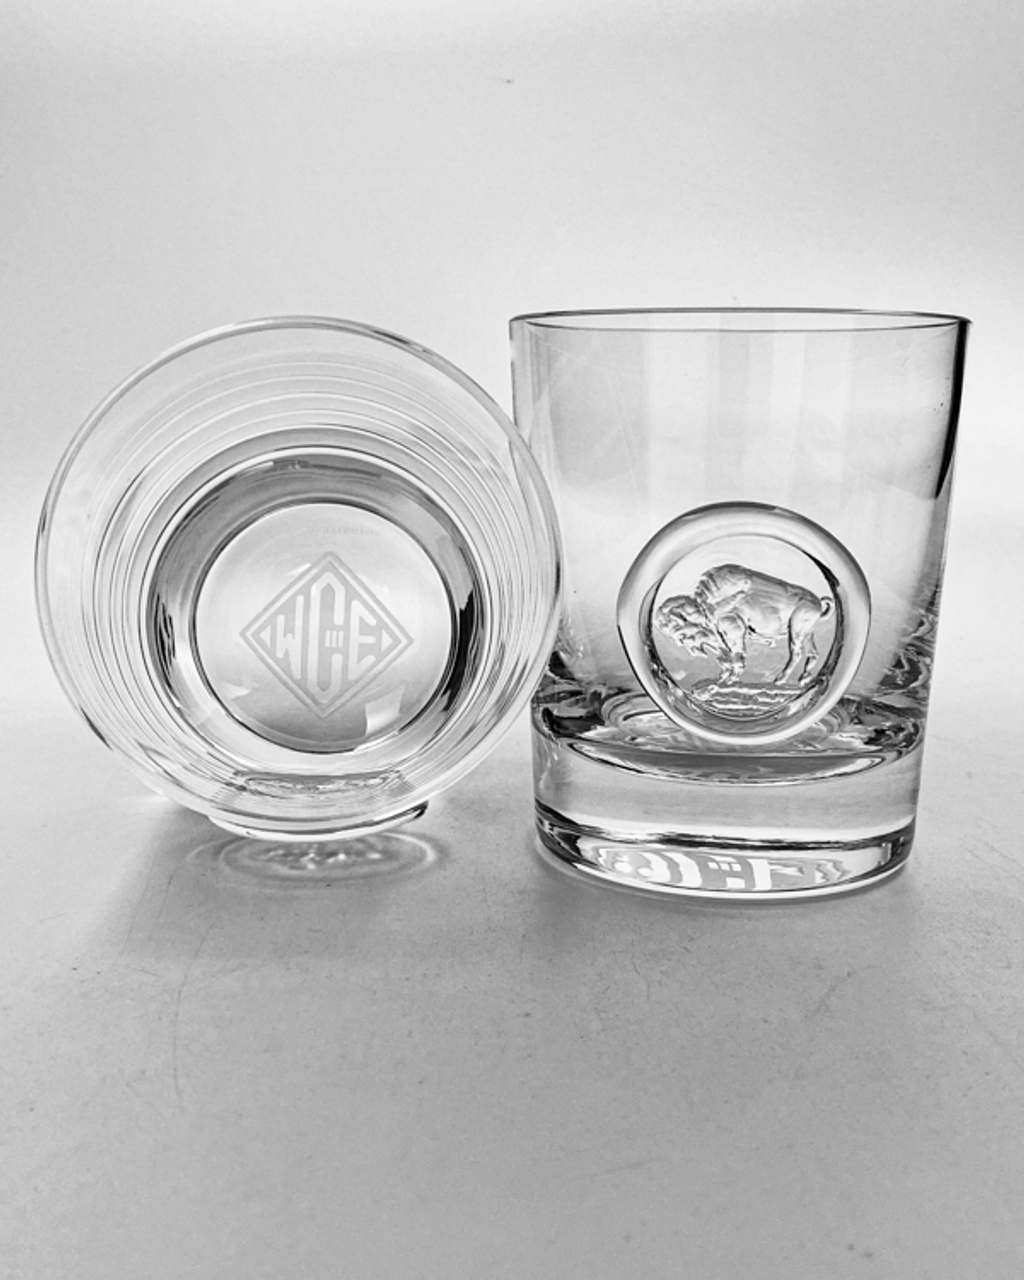 Bull & Bear Whiskey Glasses, Stock Market Whiskey Glasses